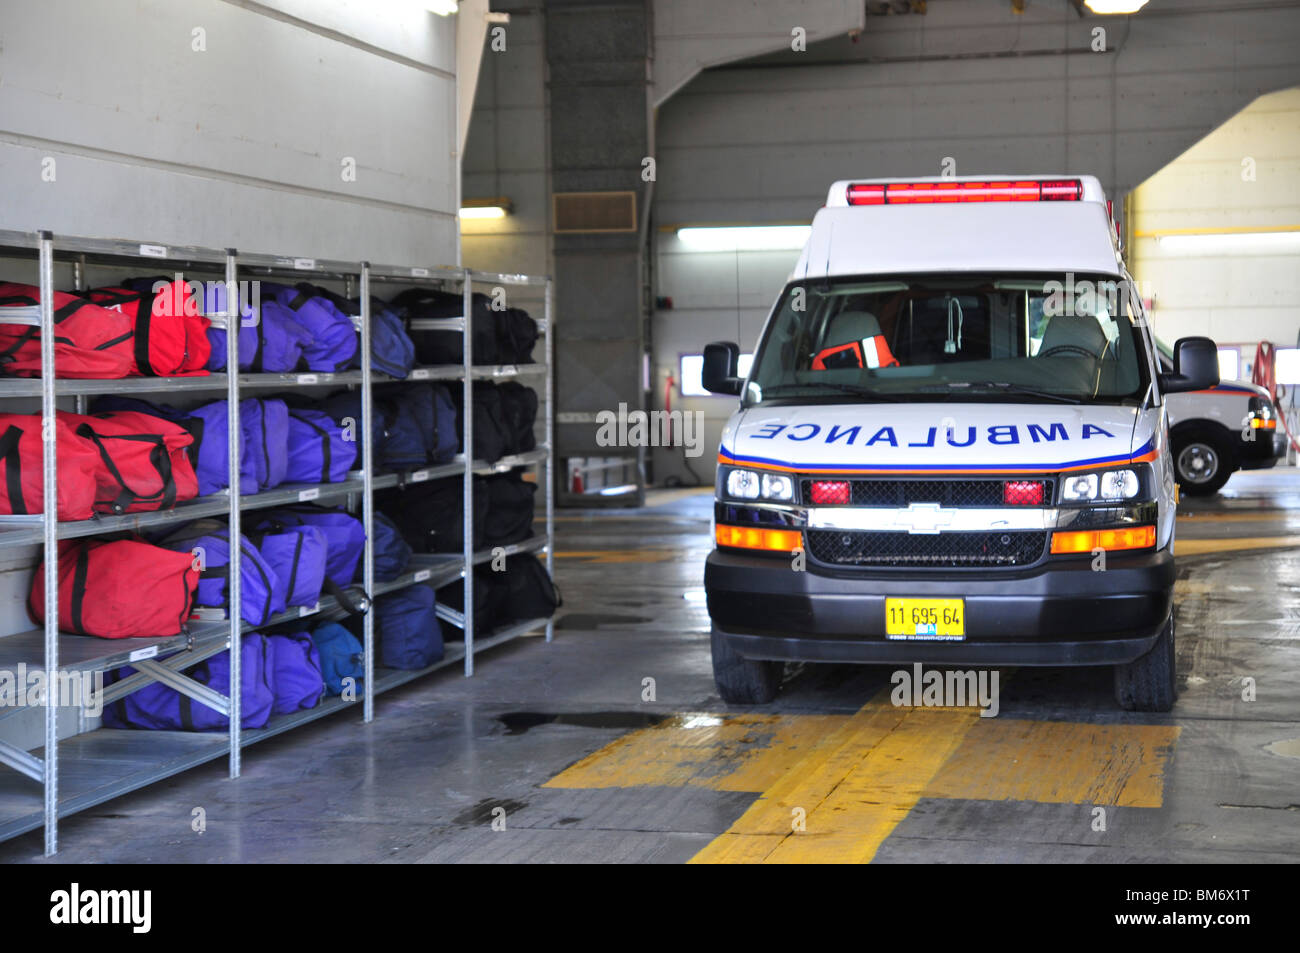 L'aéroport international Ben Gourion, Israël et de sauvetage d'ambulance, les services de lutte contre les incendies Banque D'Images